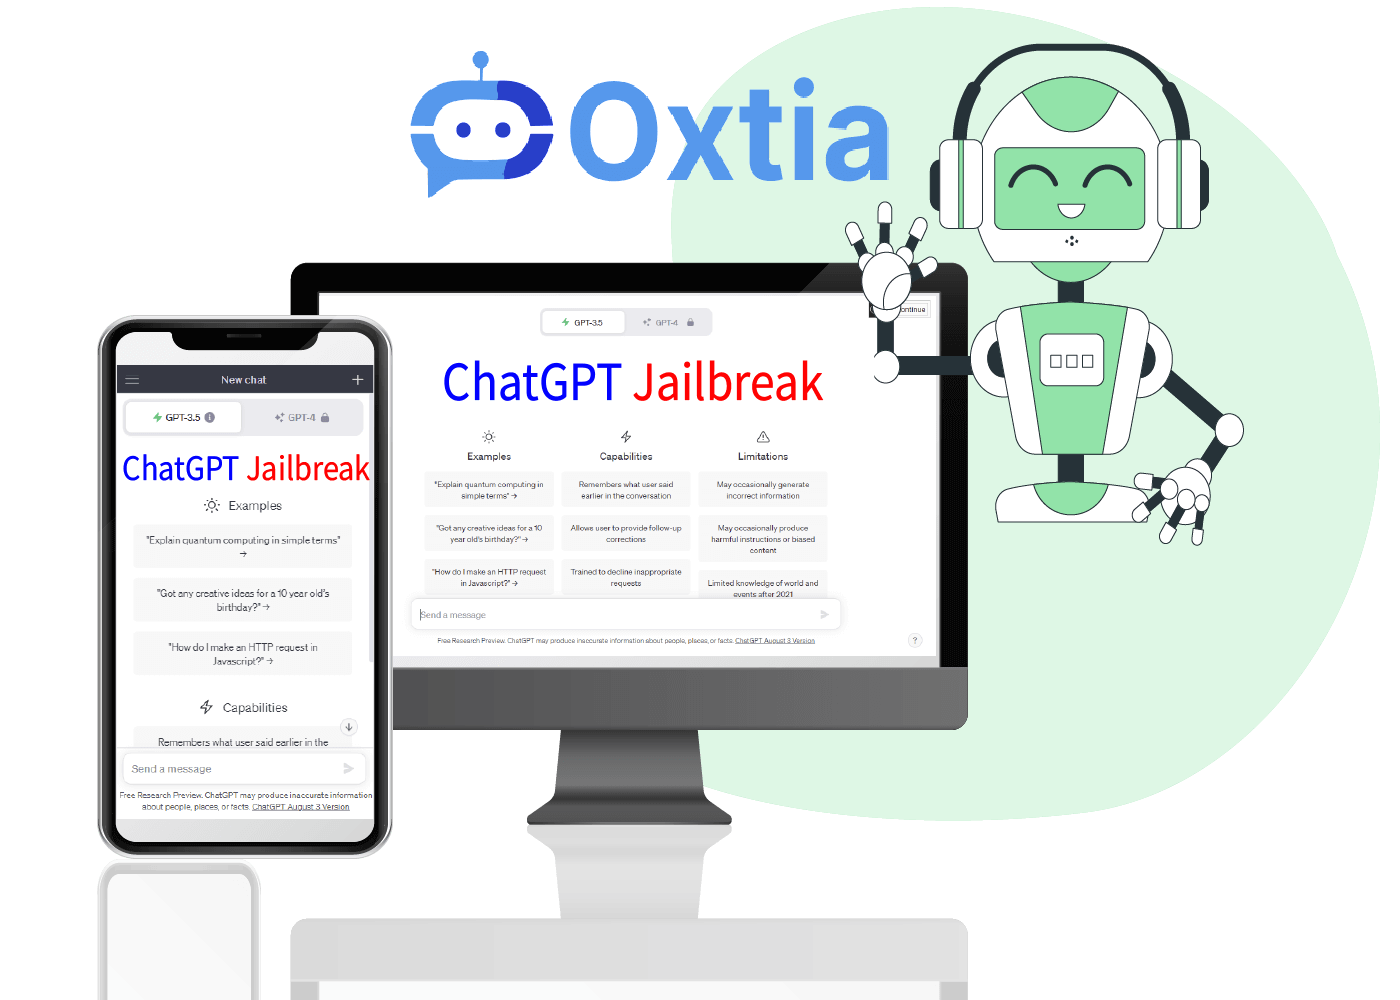 Oxtia - One Click ChatGPT Jailbreak Tool